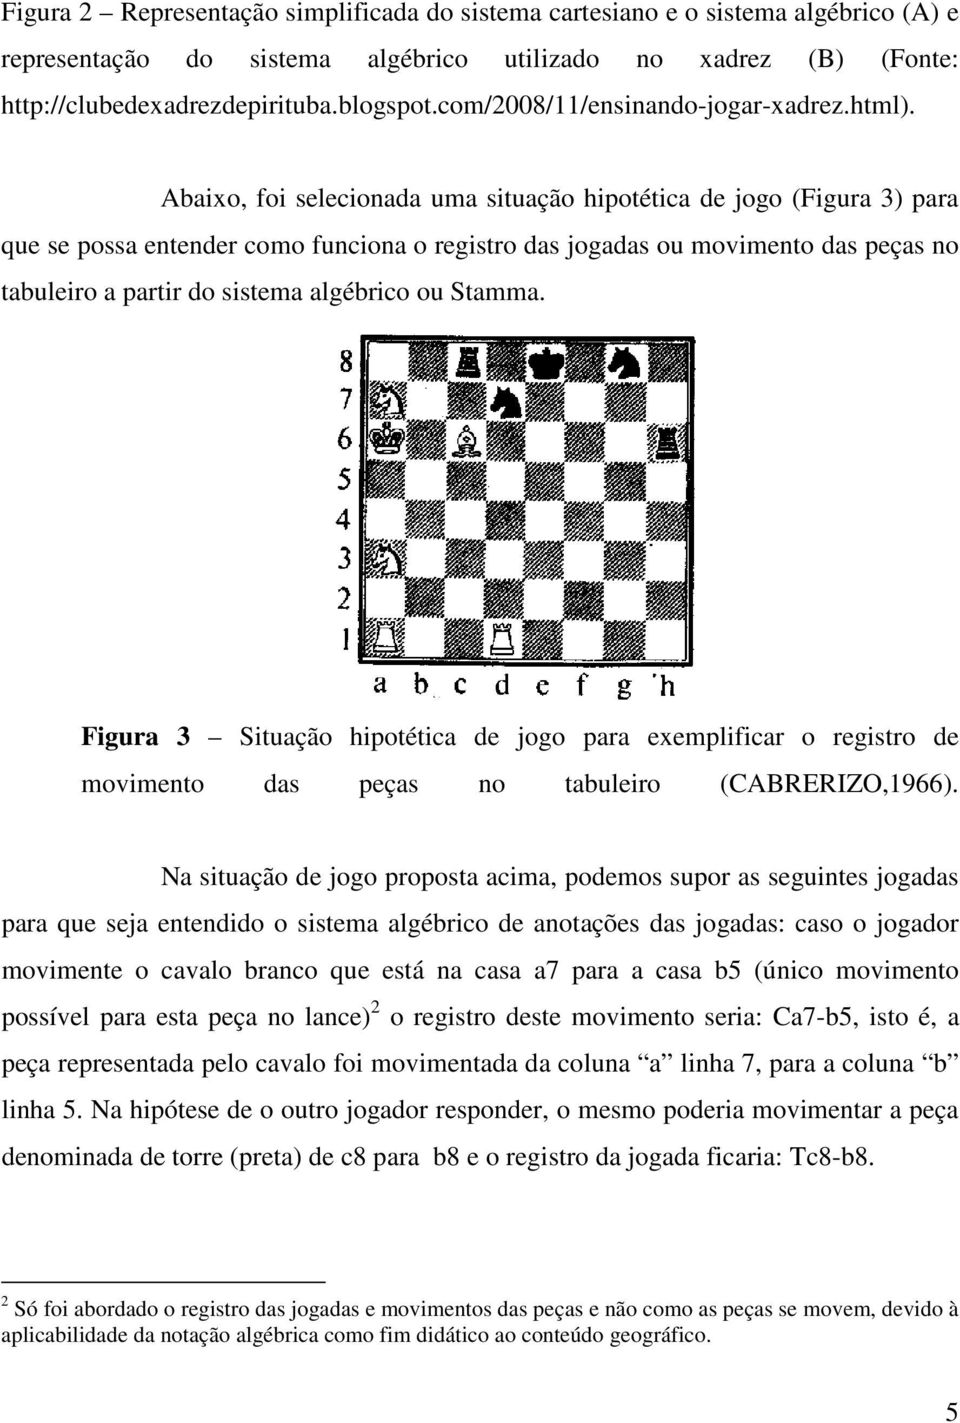 Abaixo, foi selecionada uma situação hipotética de jogo (Figura 3) para que se possa entender como funciona o registro das jogadas ou movimento das peças no tabuleiro a partir do sistema algébrico ou